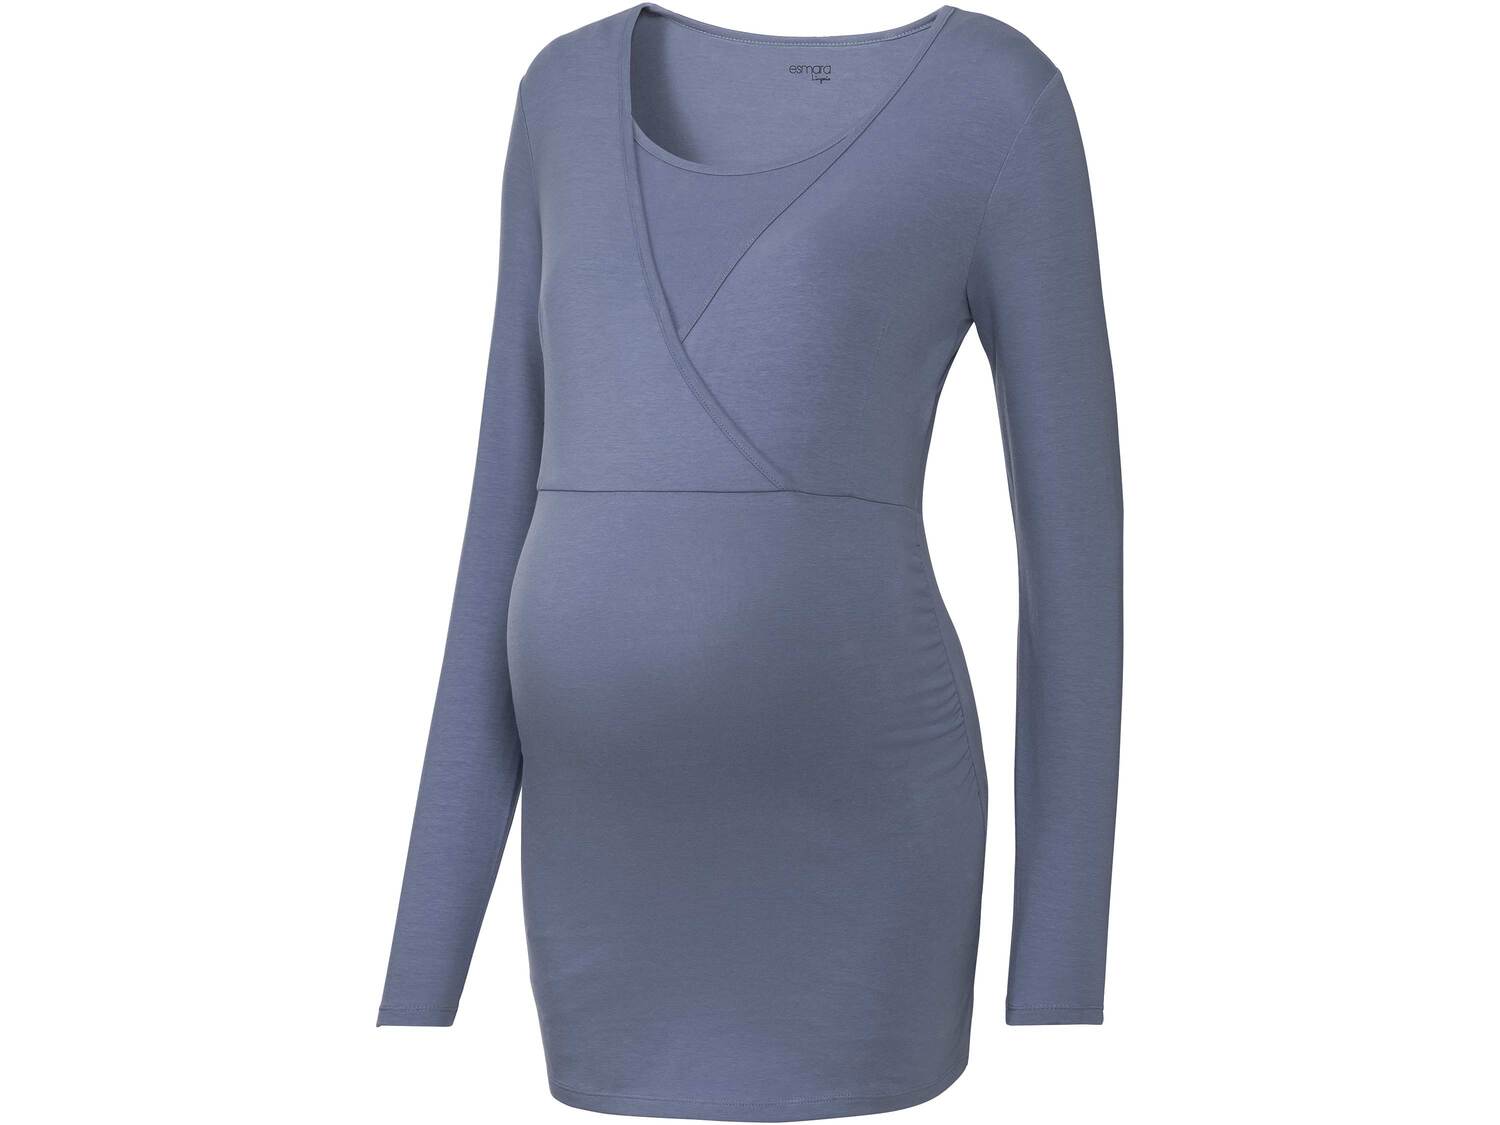 Piżama ciążowa z biobawełną Esmara, cena 39,99 PLN 
- rozmiary: XS-L
- wysoka ...